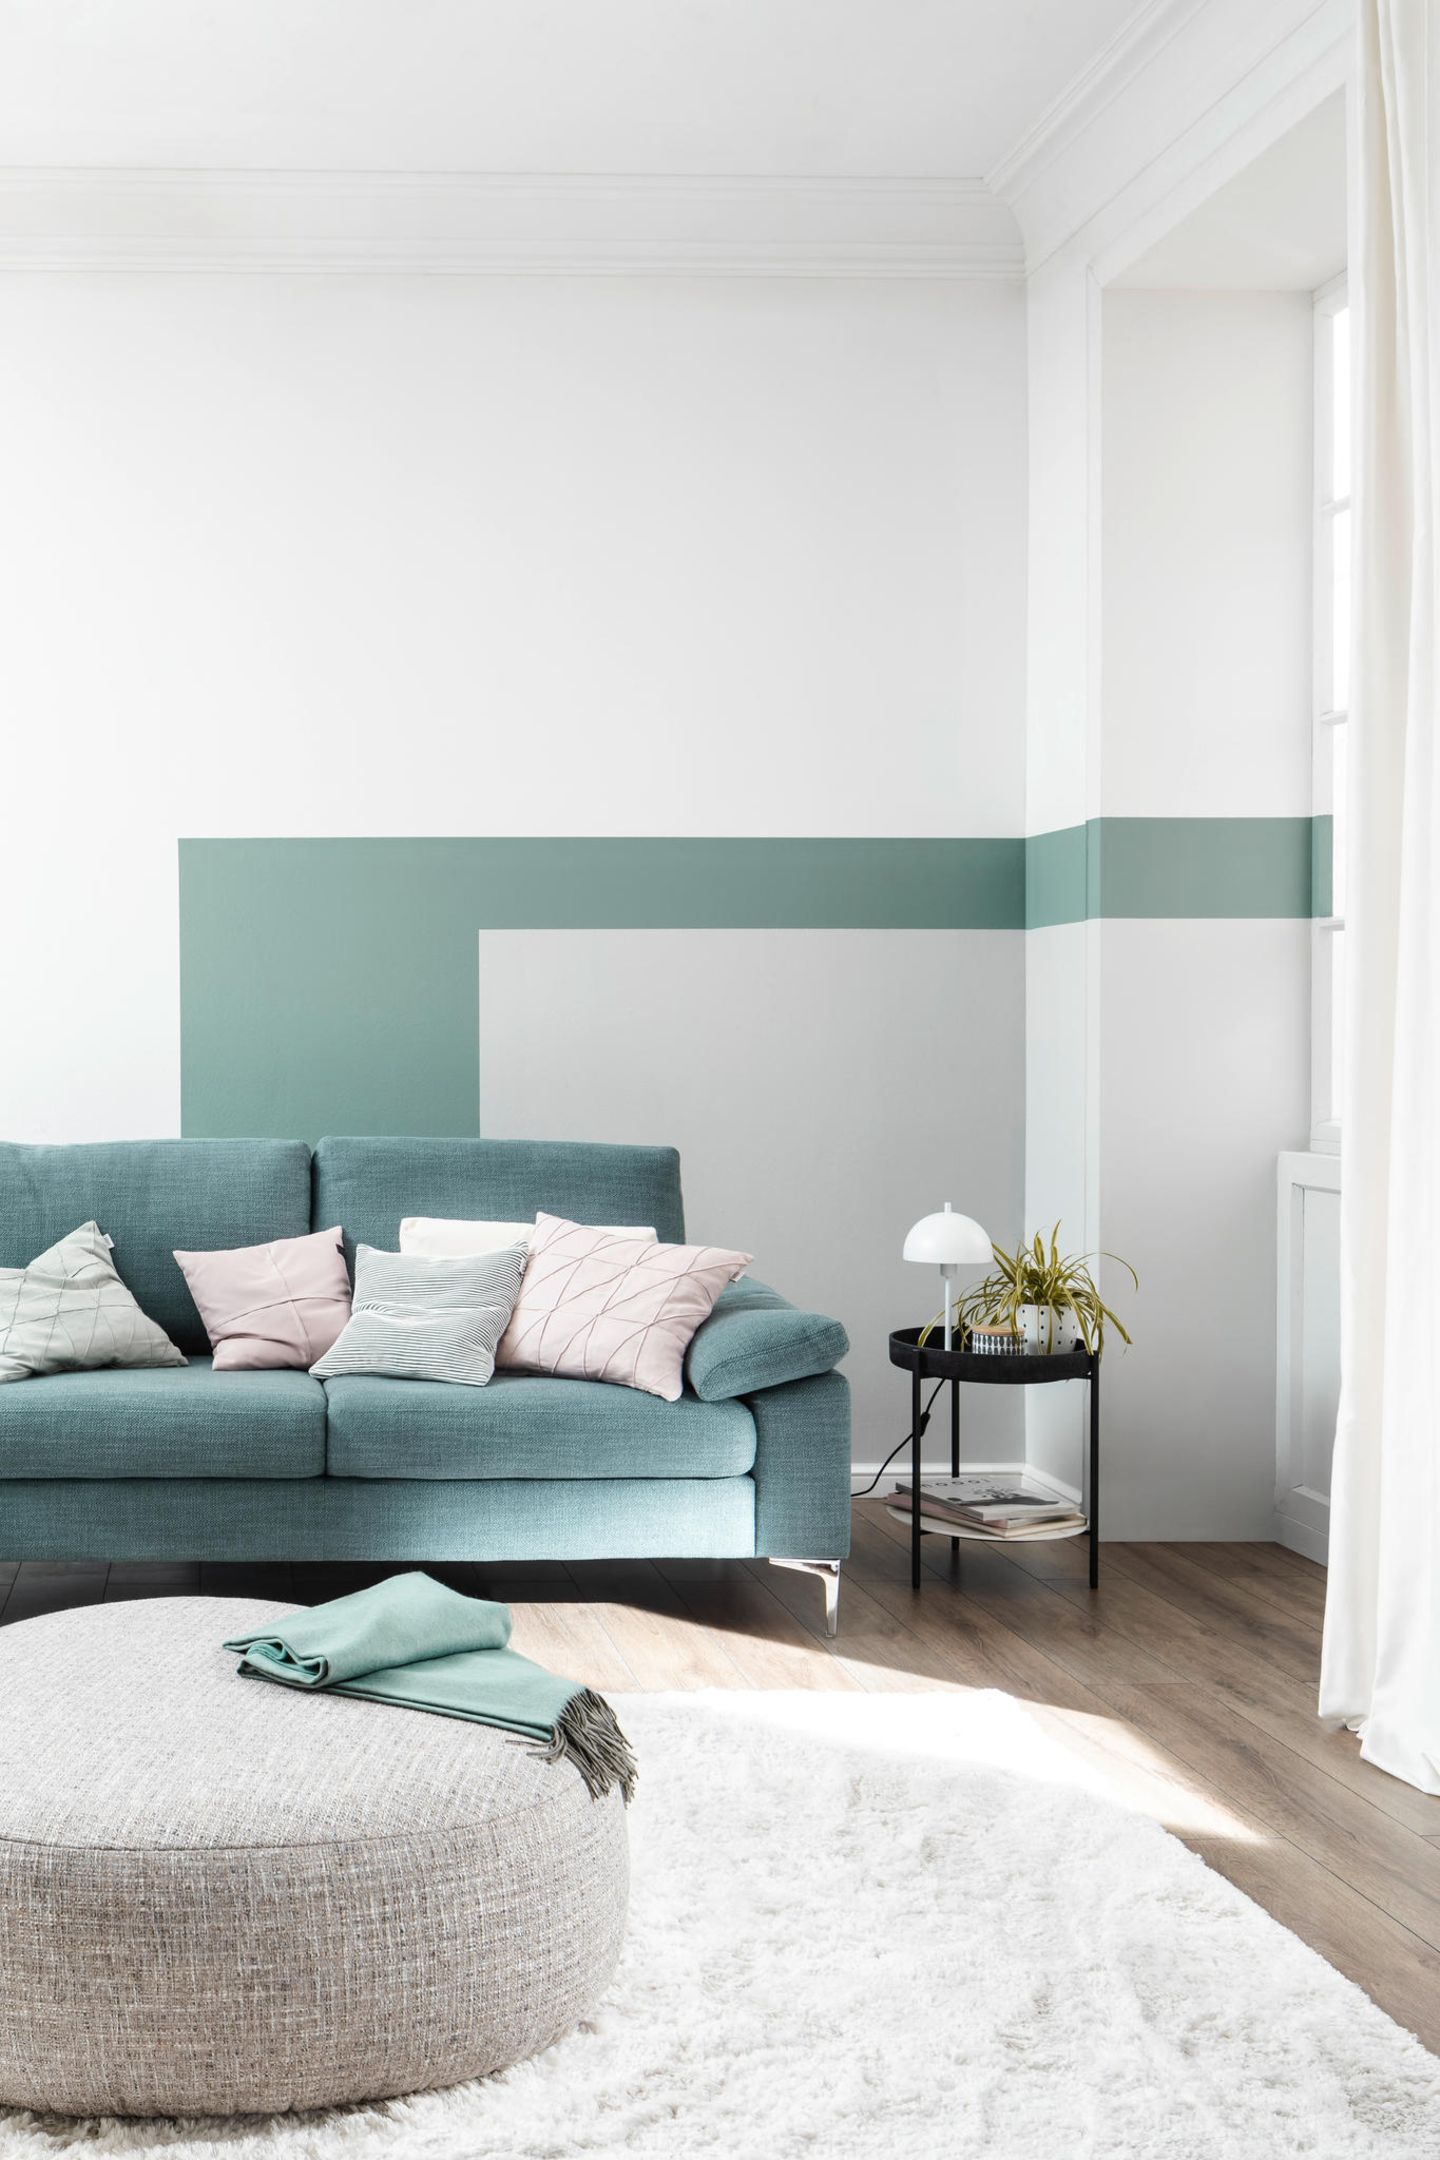 Wohnzimmer mit blaugrünem Sofa und grauem Pouf vor einer farbigen Wand in Grün-Grau